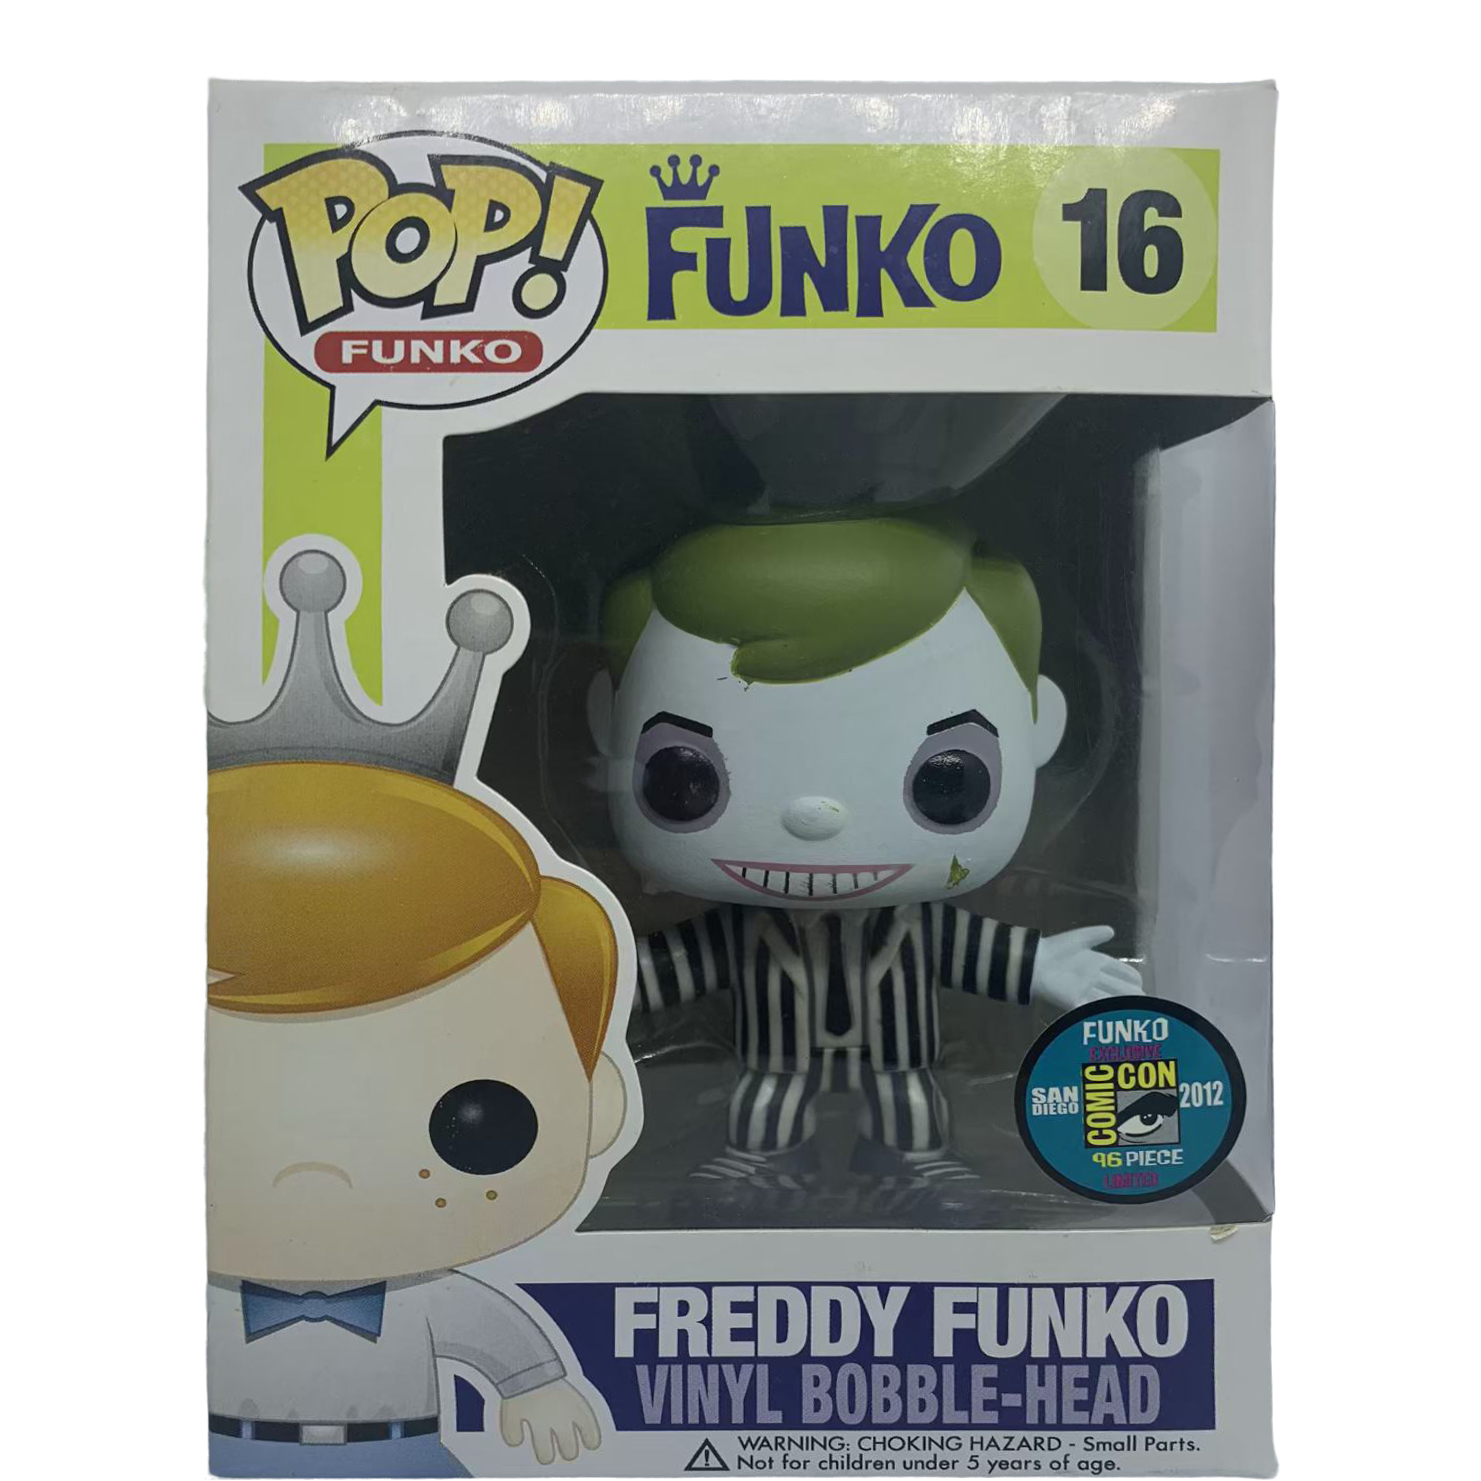 Funko Pop! Freddy Funko as Beetlejuice SDCC Bobble-Head Figure #16 